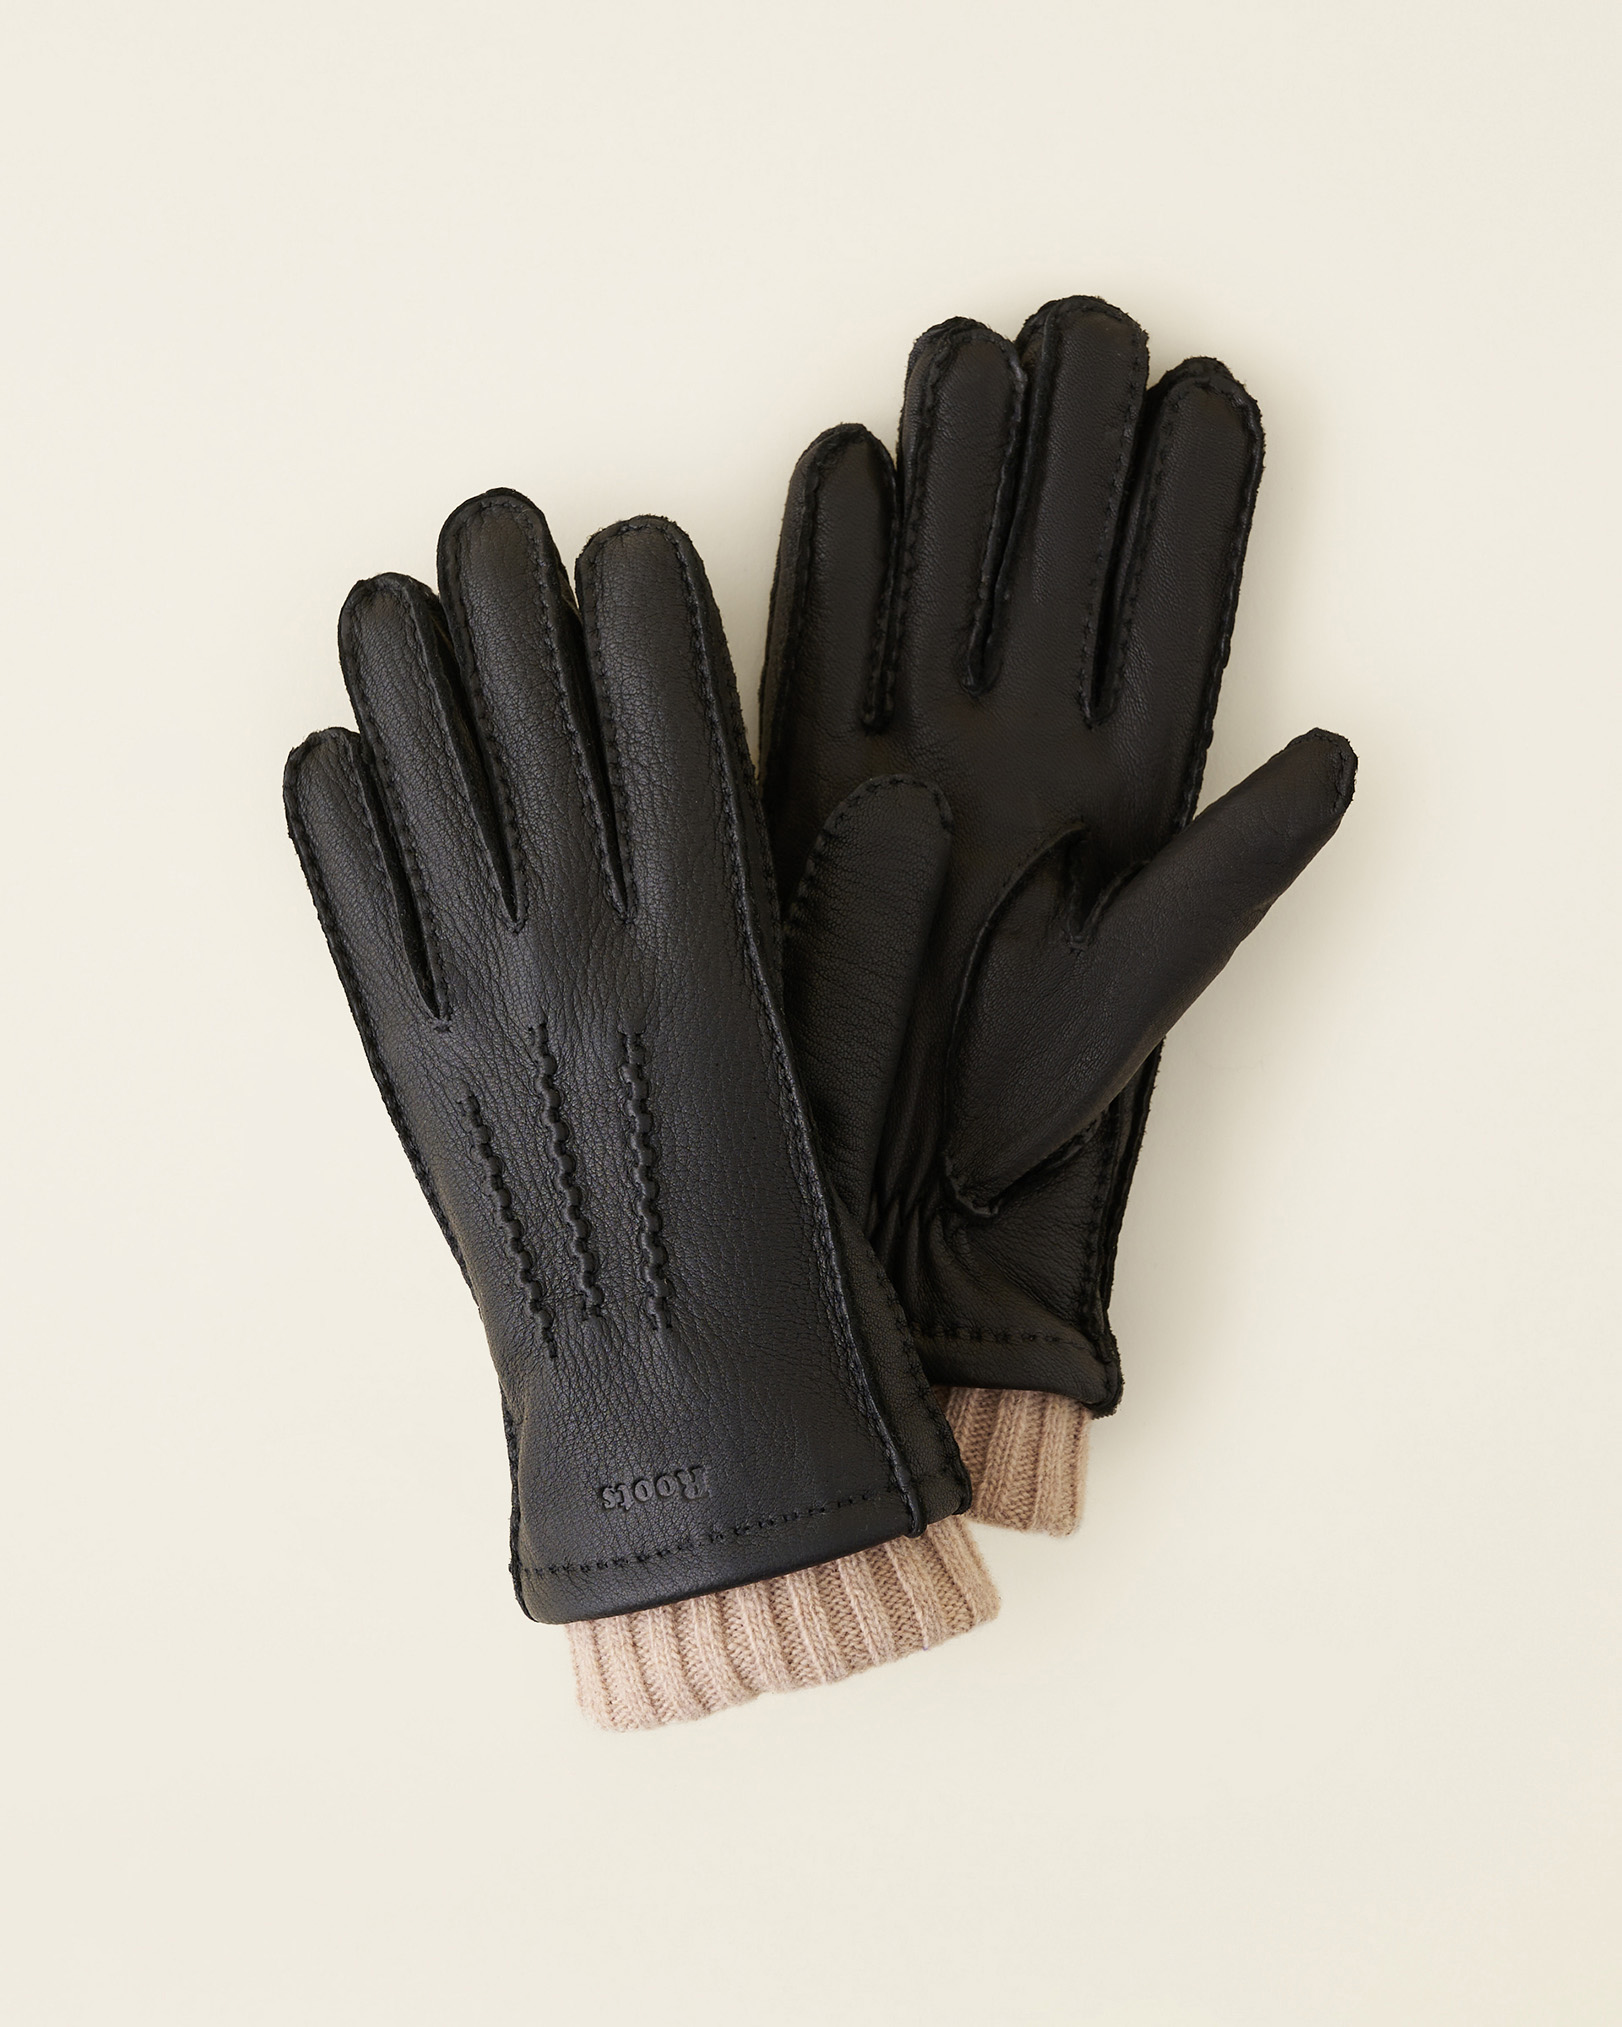 Roots Women's Cuff Deerskin Glove in Black